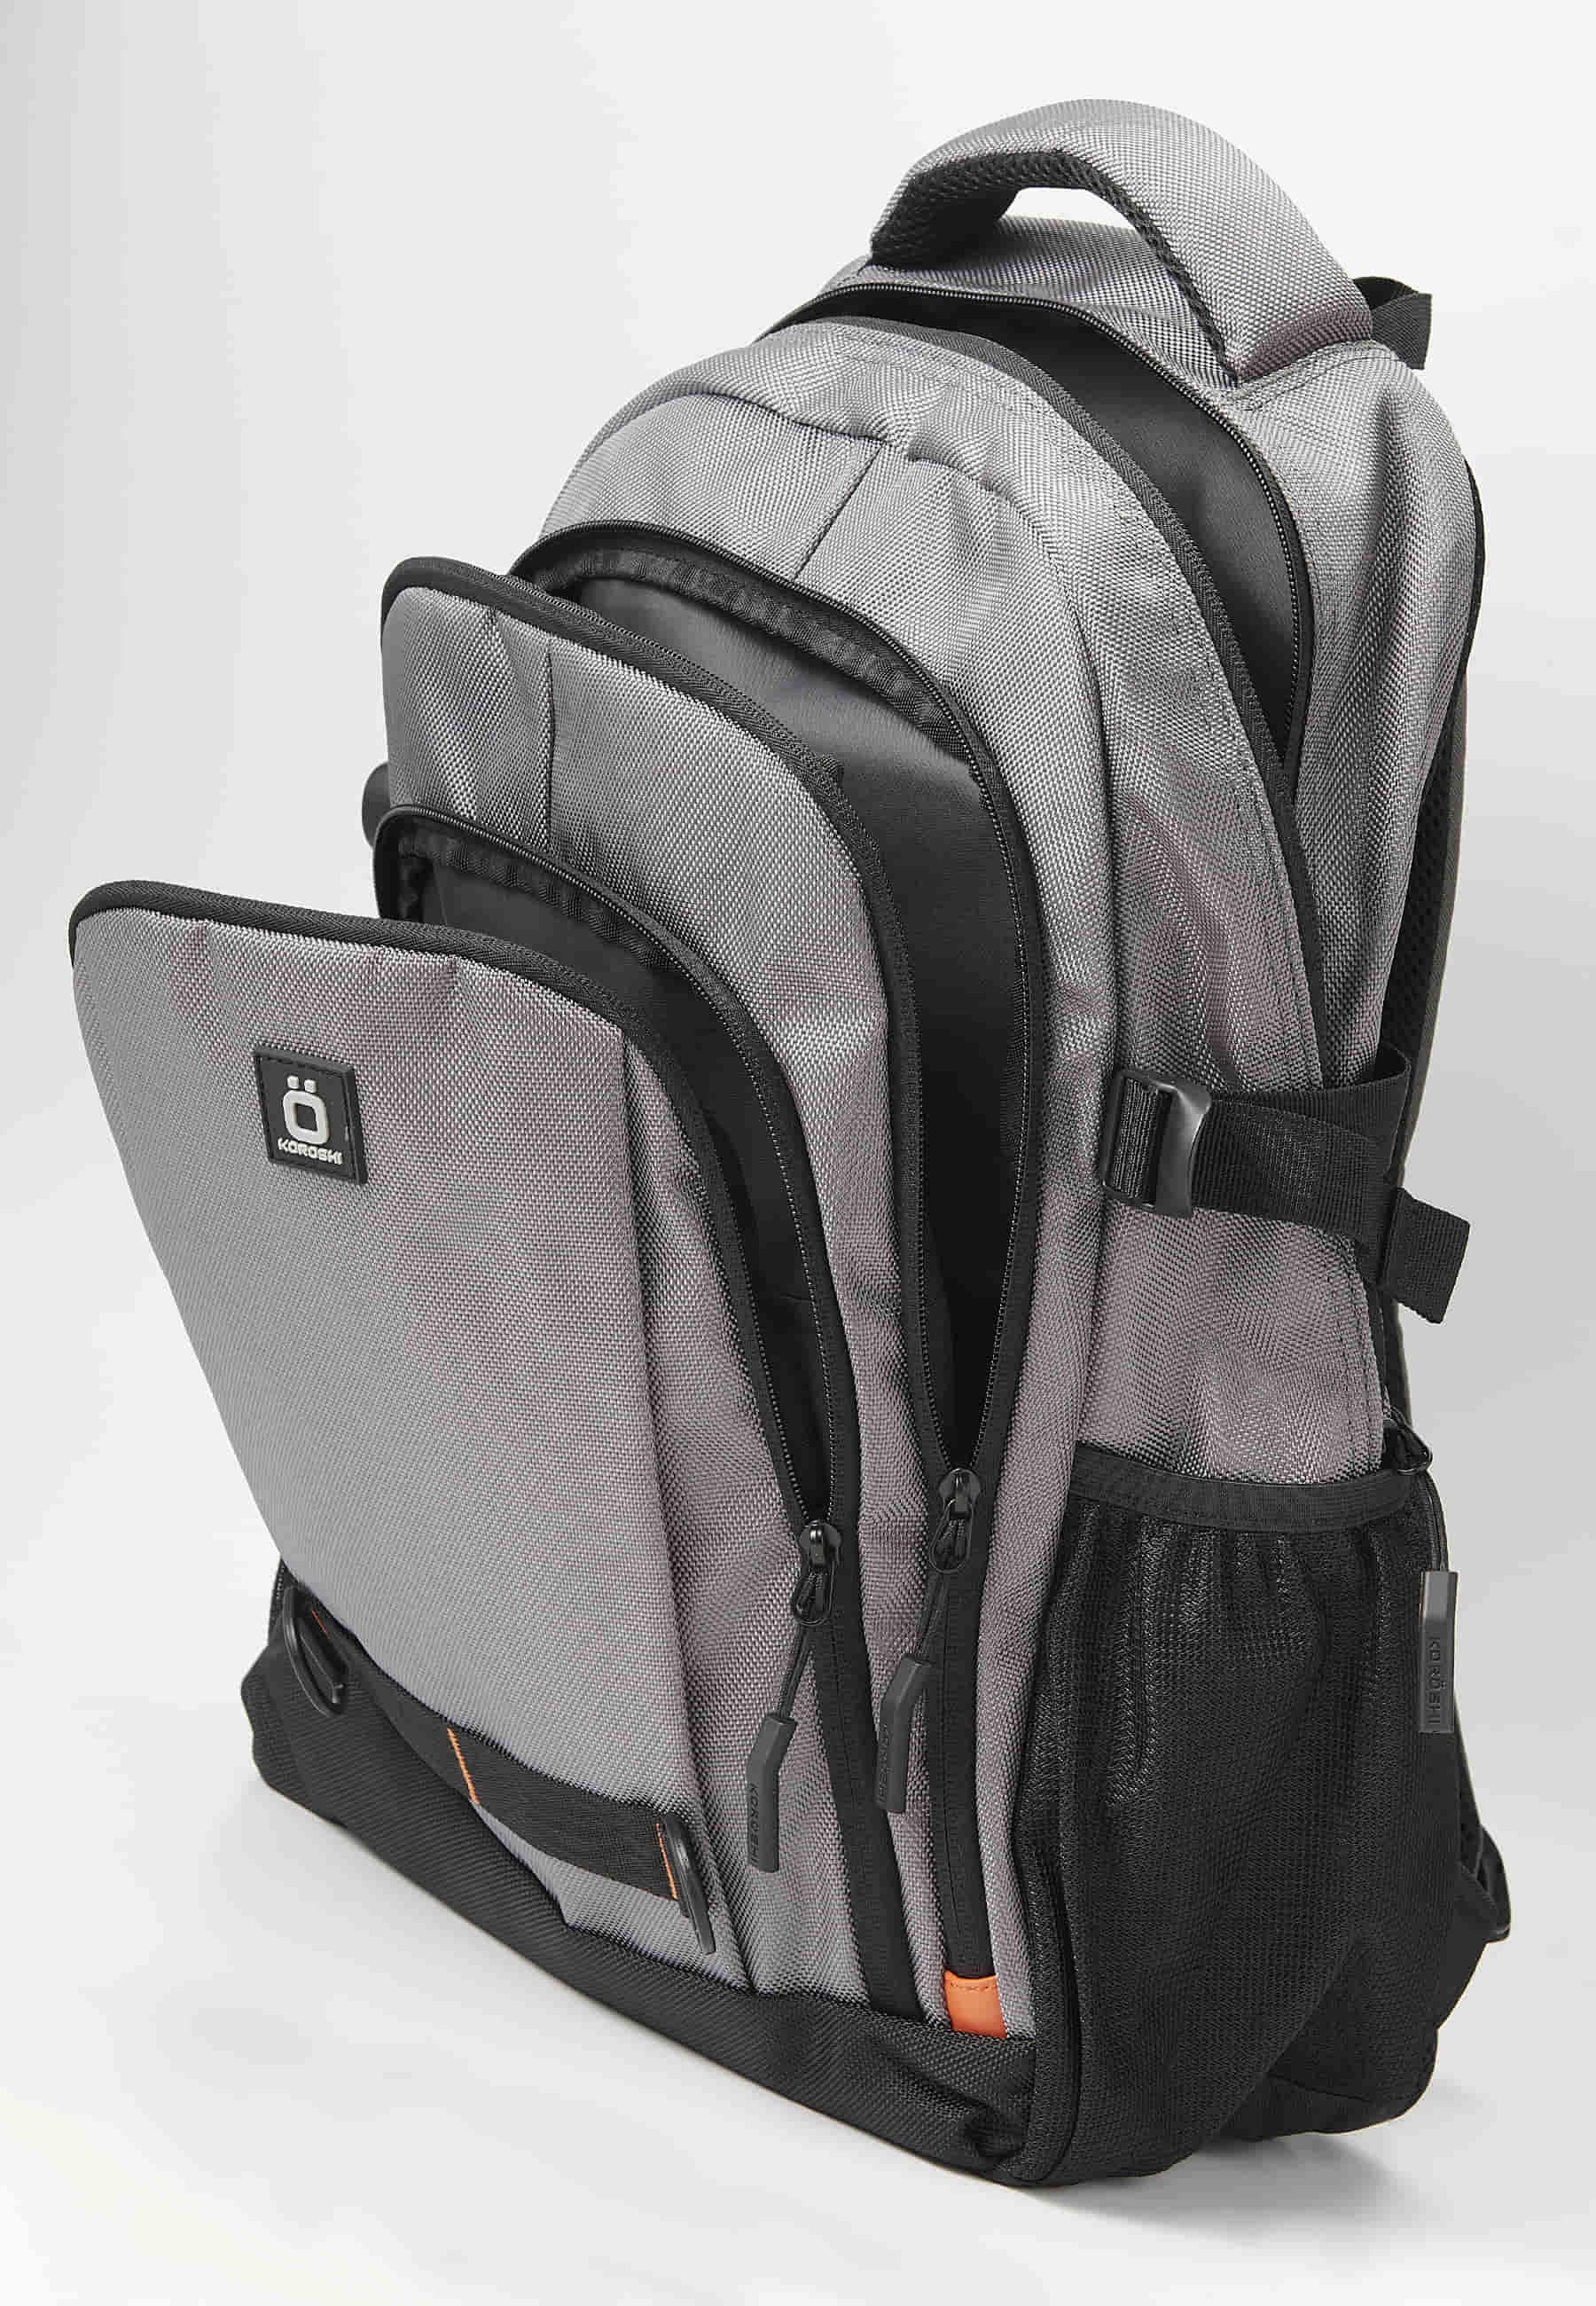 Koröshi-Rucksack mit drei Reißverschlussfächern, eines für Laptop, mit grauen Innentaschen 4